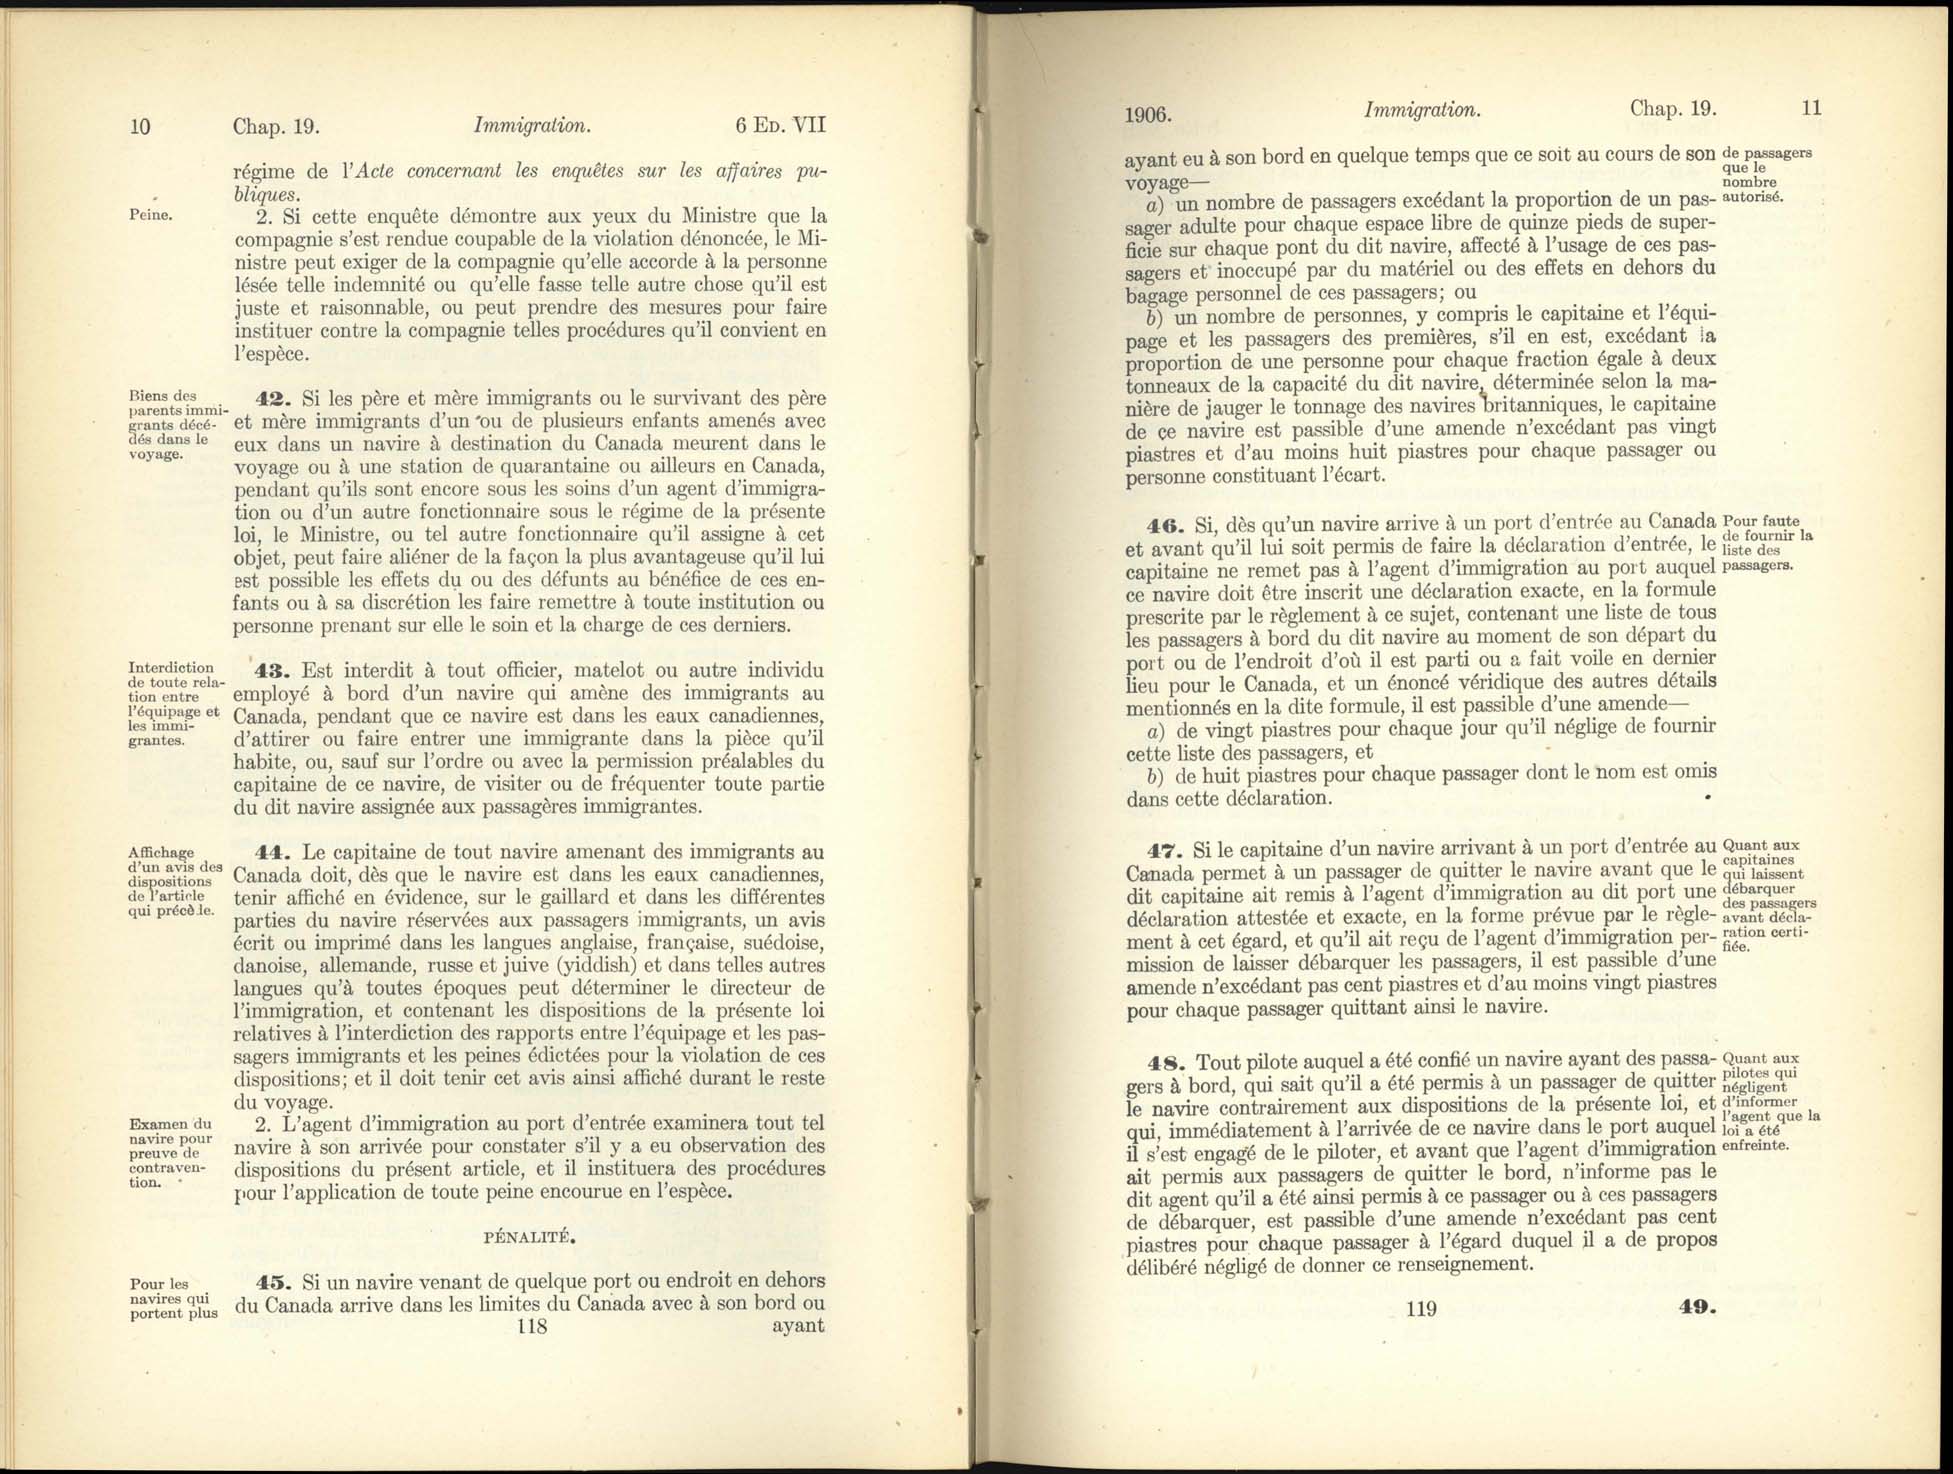 Chap. 19 Page 118, 119 Acte de l’immigration, 1906